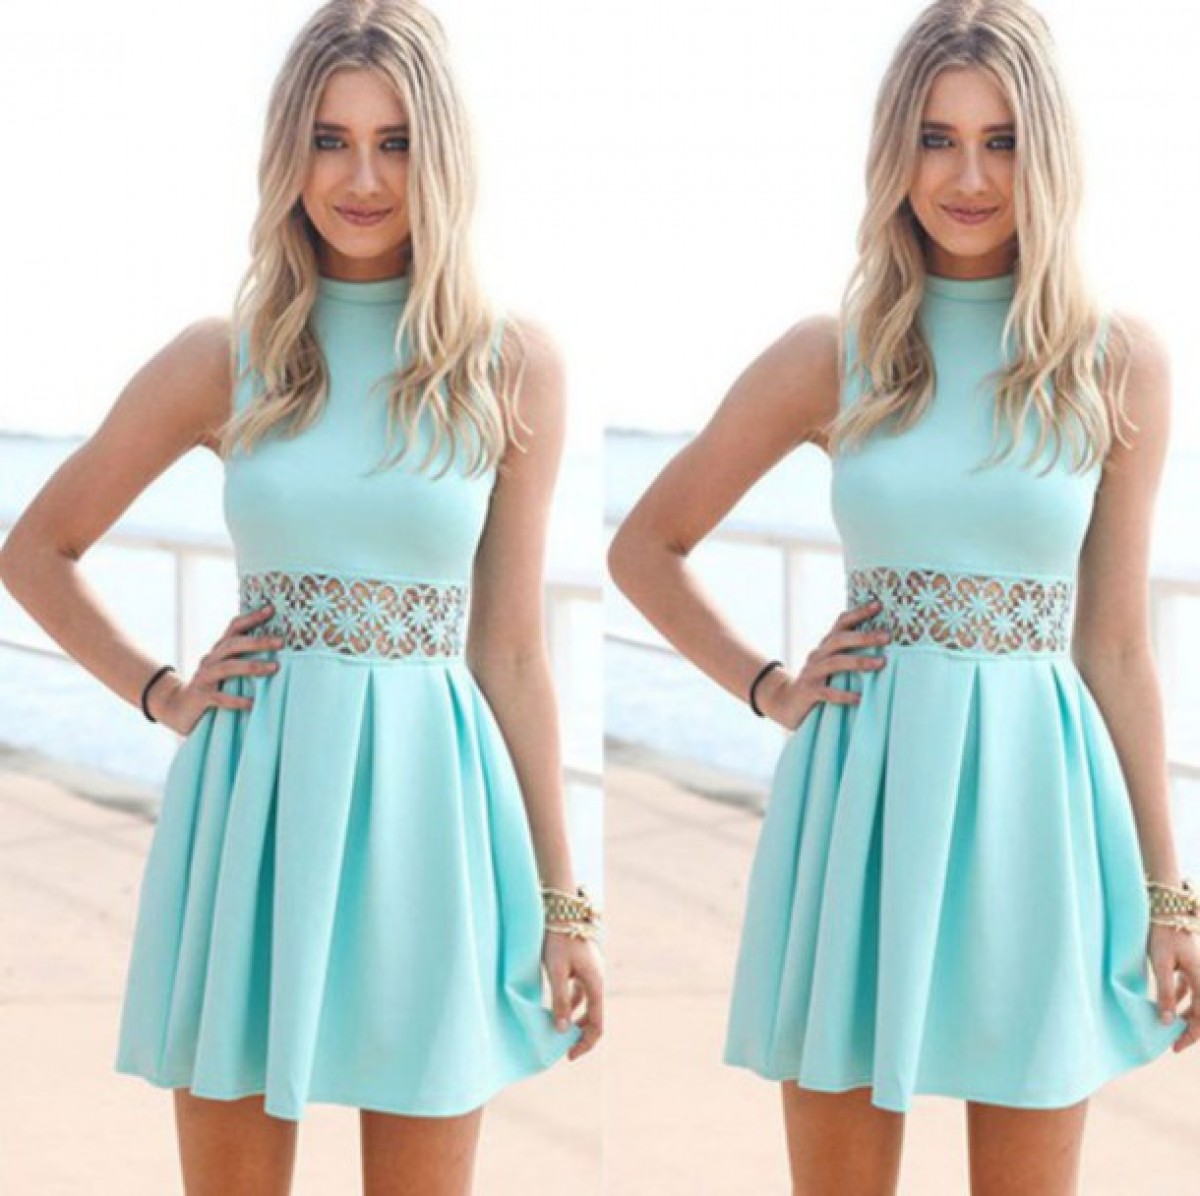 Phong cách thanh lịch với váy xanh pastel